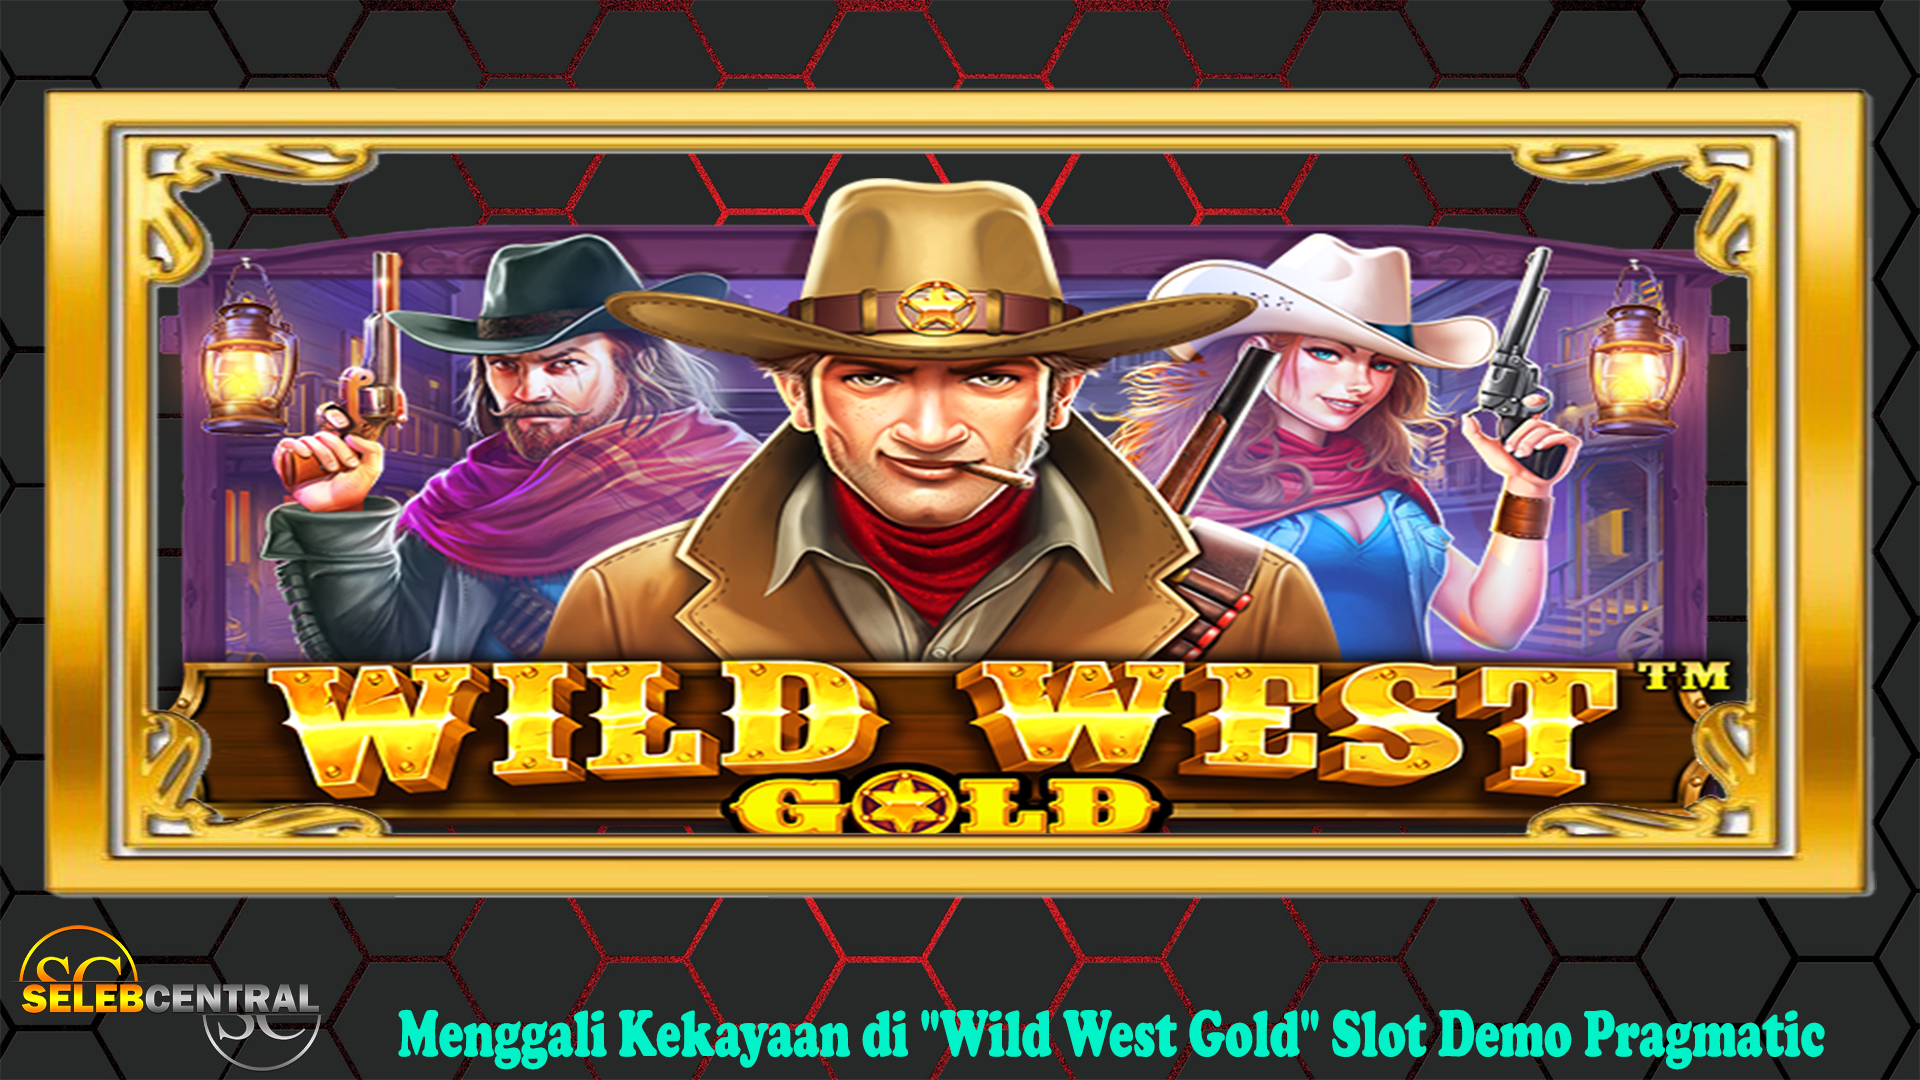 Menggali Kekayaan di "Wild West Gold" Slot Demo Pragmatic